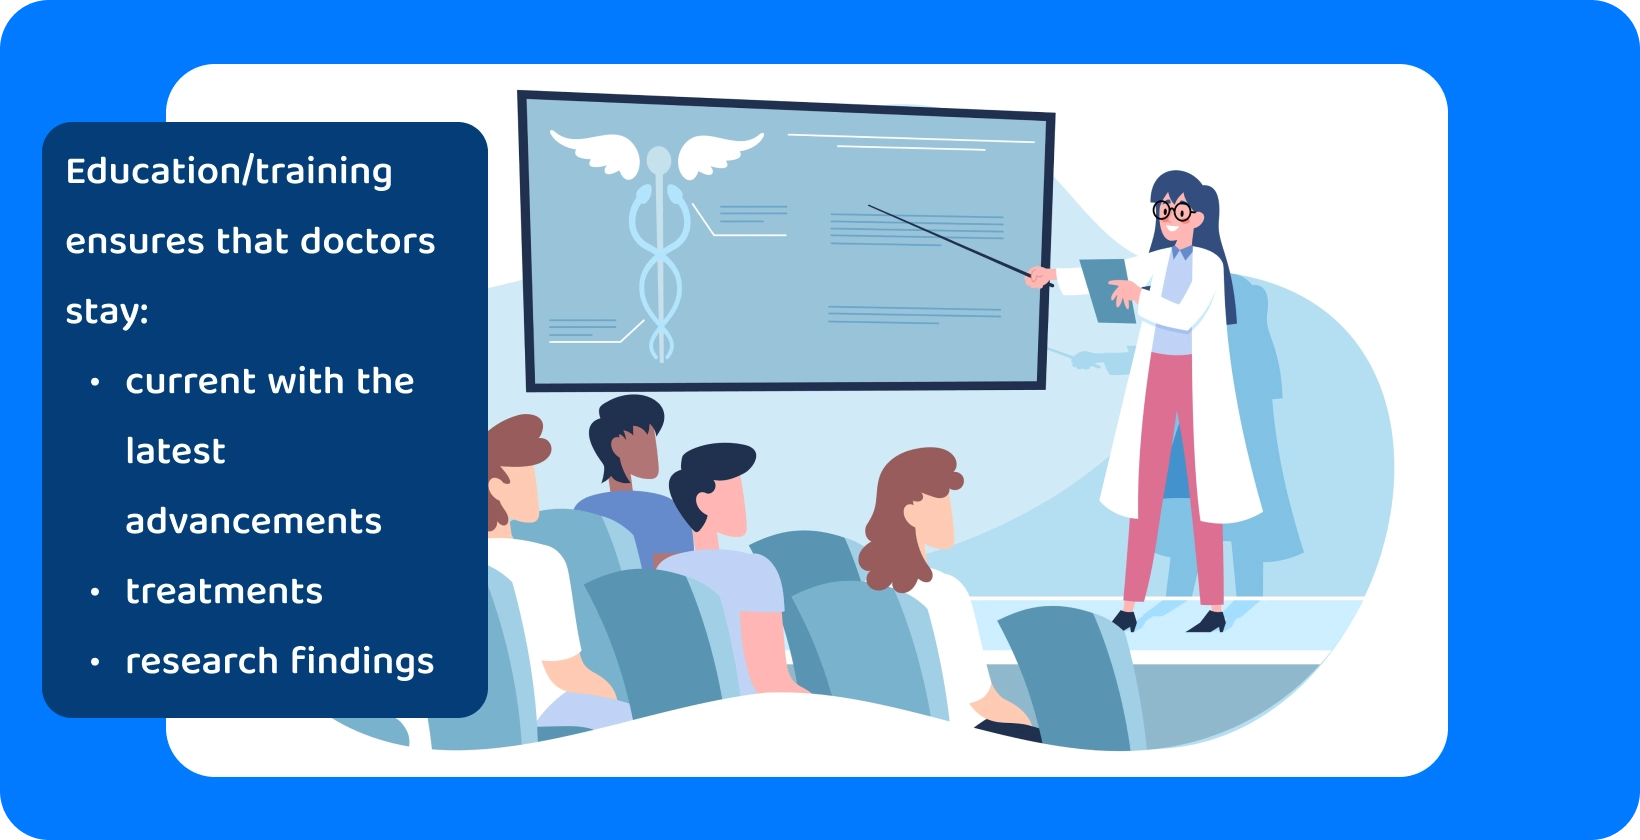 Ένας εικονογραφημένος γιατρός παρουσιάζει σε ένα ακροατήριο τονίζοντας πόσο σημαντική είναι η ιατρική γνώση και η εκπαίδευση στον τομέα της υγειονομικής περίθαλψης.